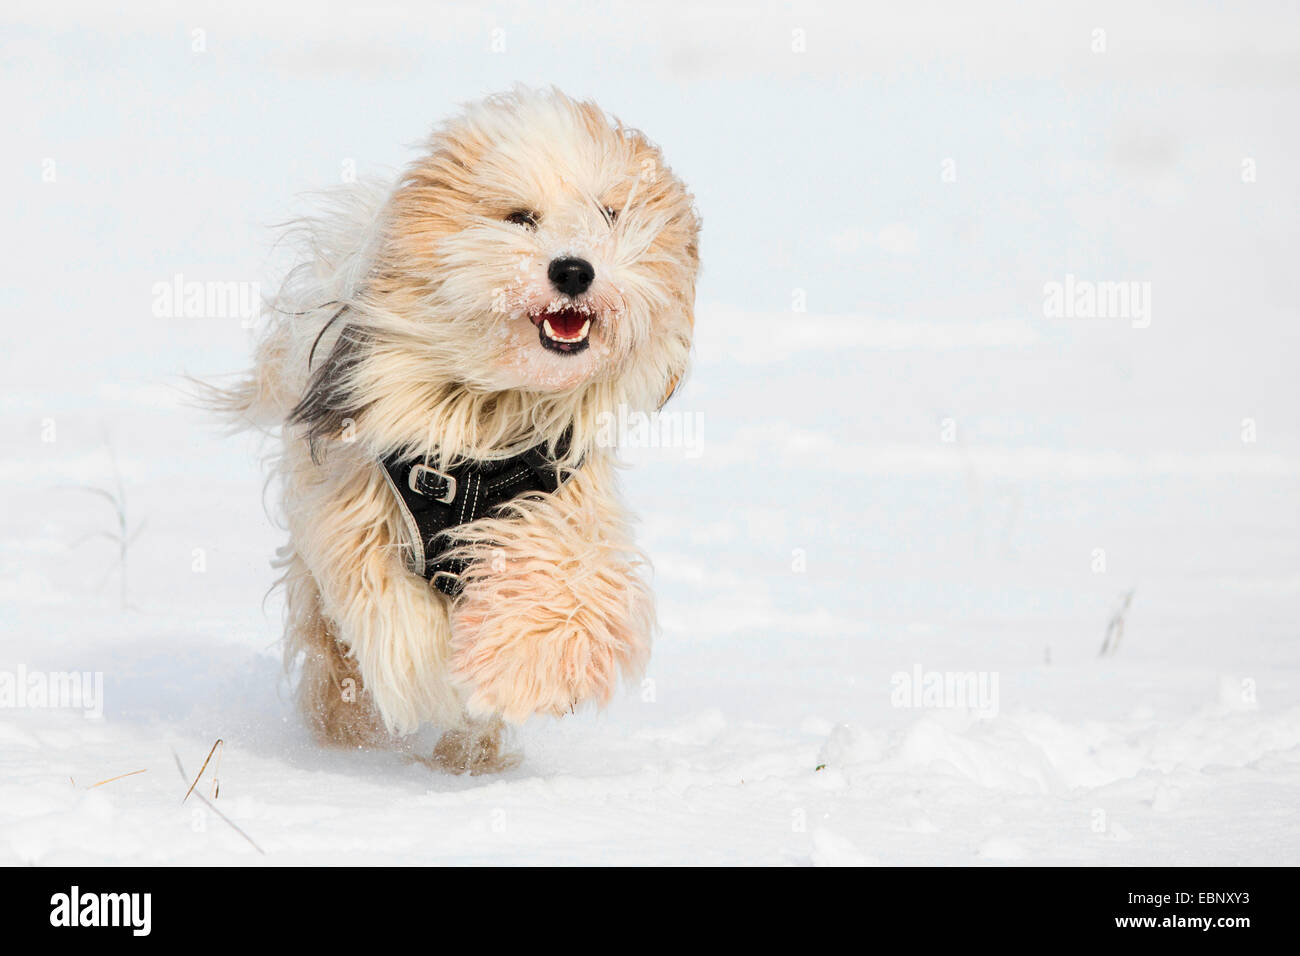 Terrier tibétain Tsang, Apso, Dokhi Apso (Canis lupus f. familiaris), un an, sable blanc et brillant homme d'exécution dans la neige vers la caméra, Allemagne Banque D'Images